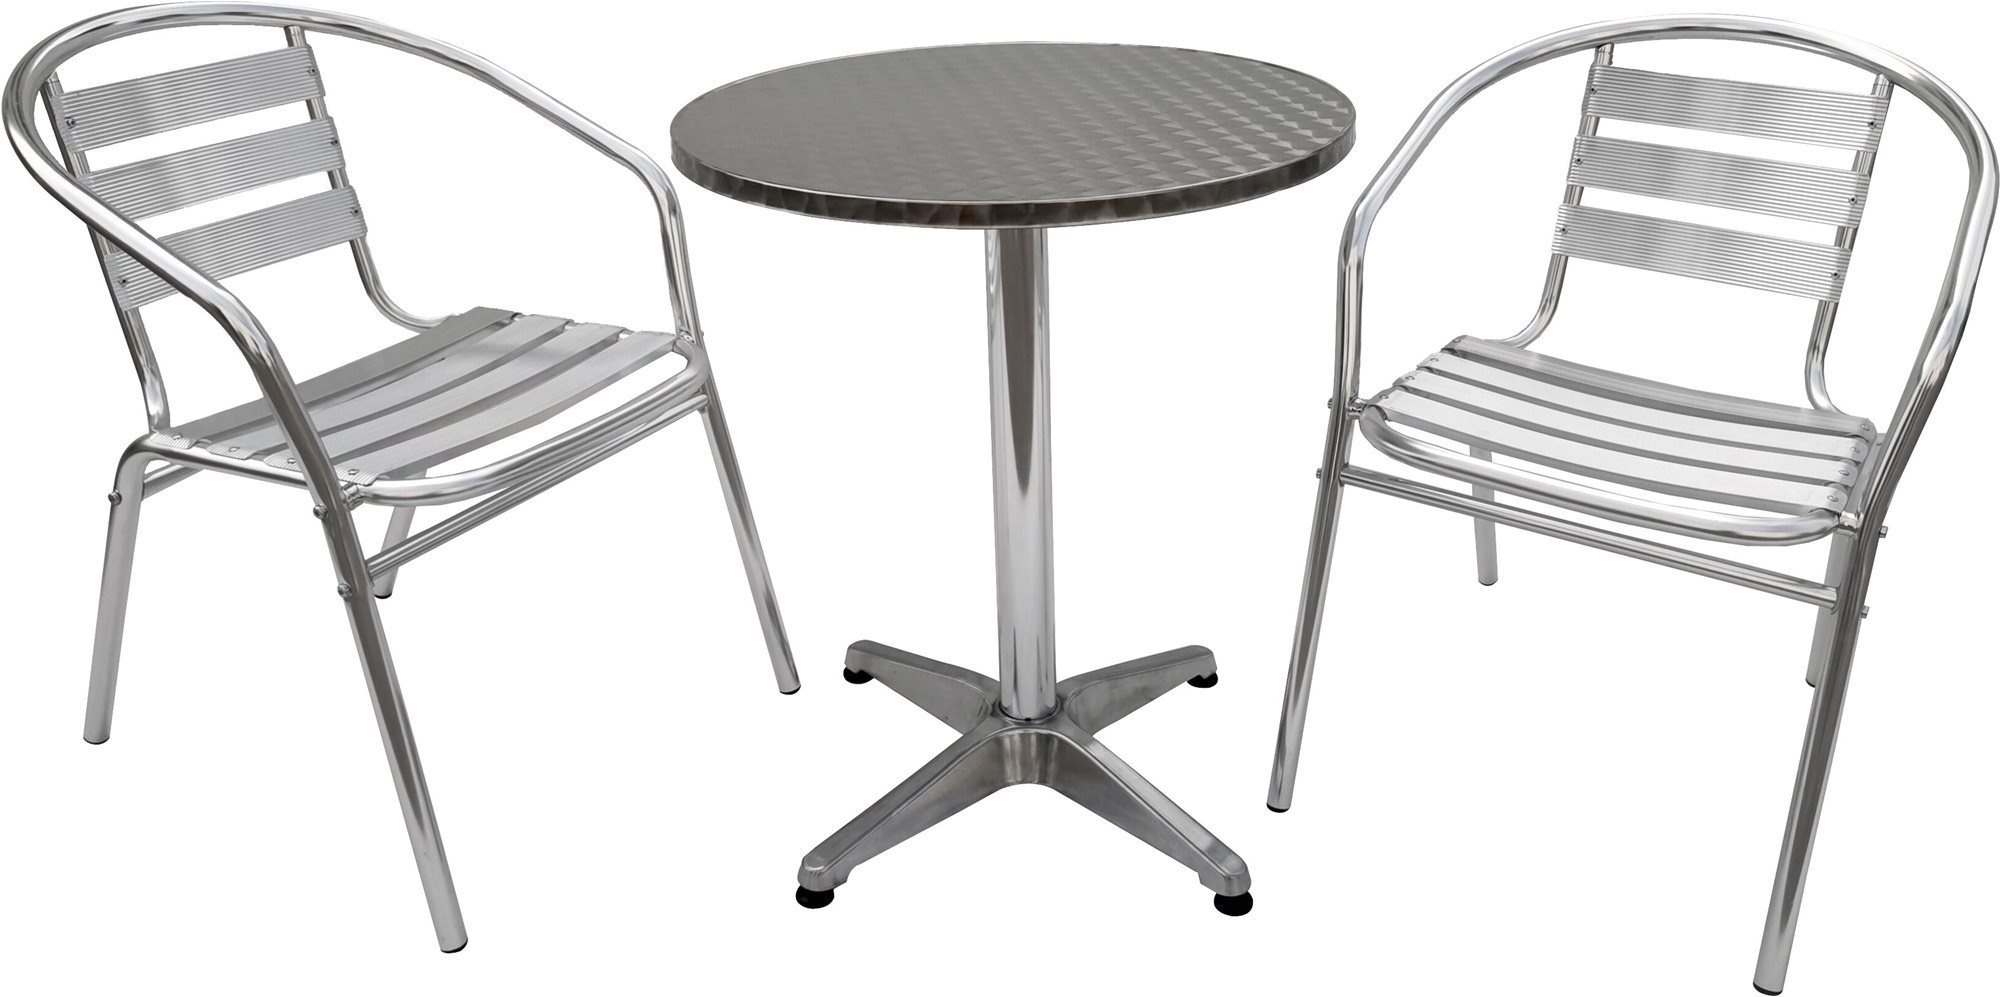 La Proromance Bistro Table 001 + 2 db Bistro Chair 001 Aluminium